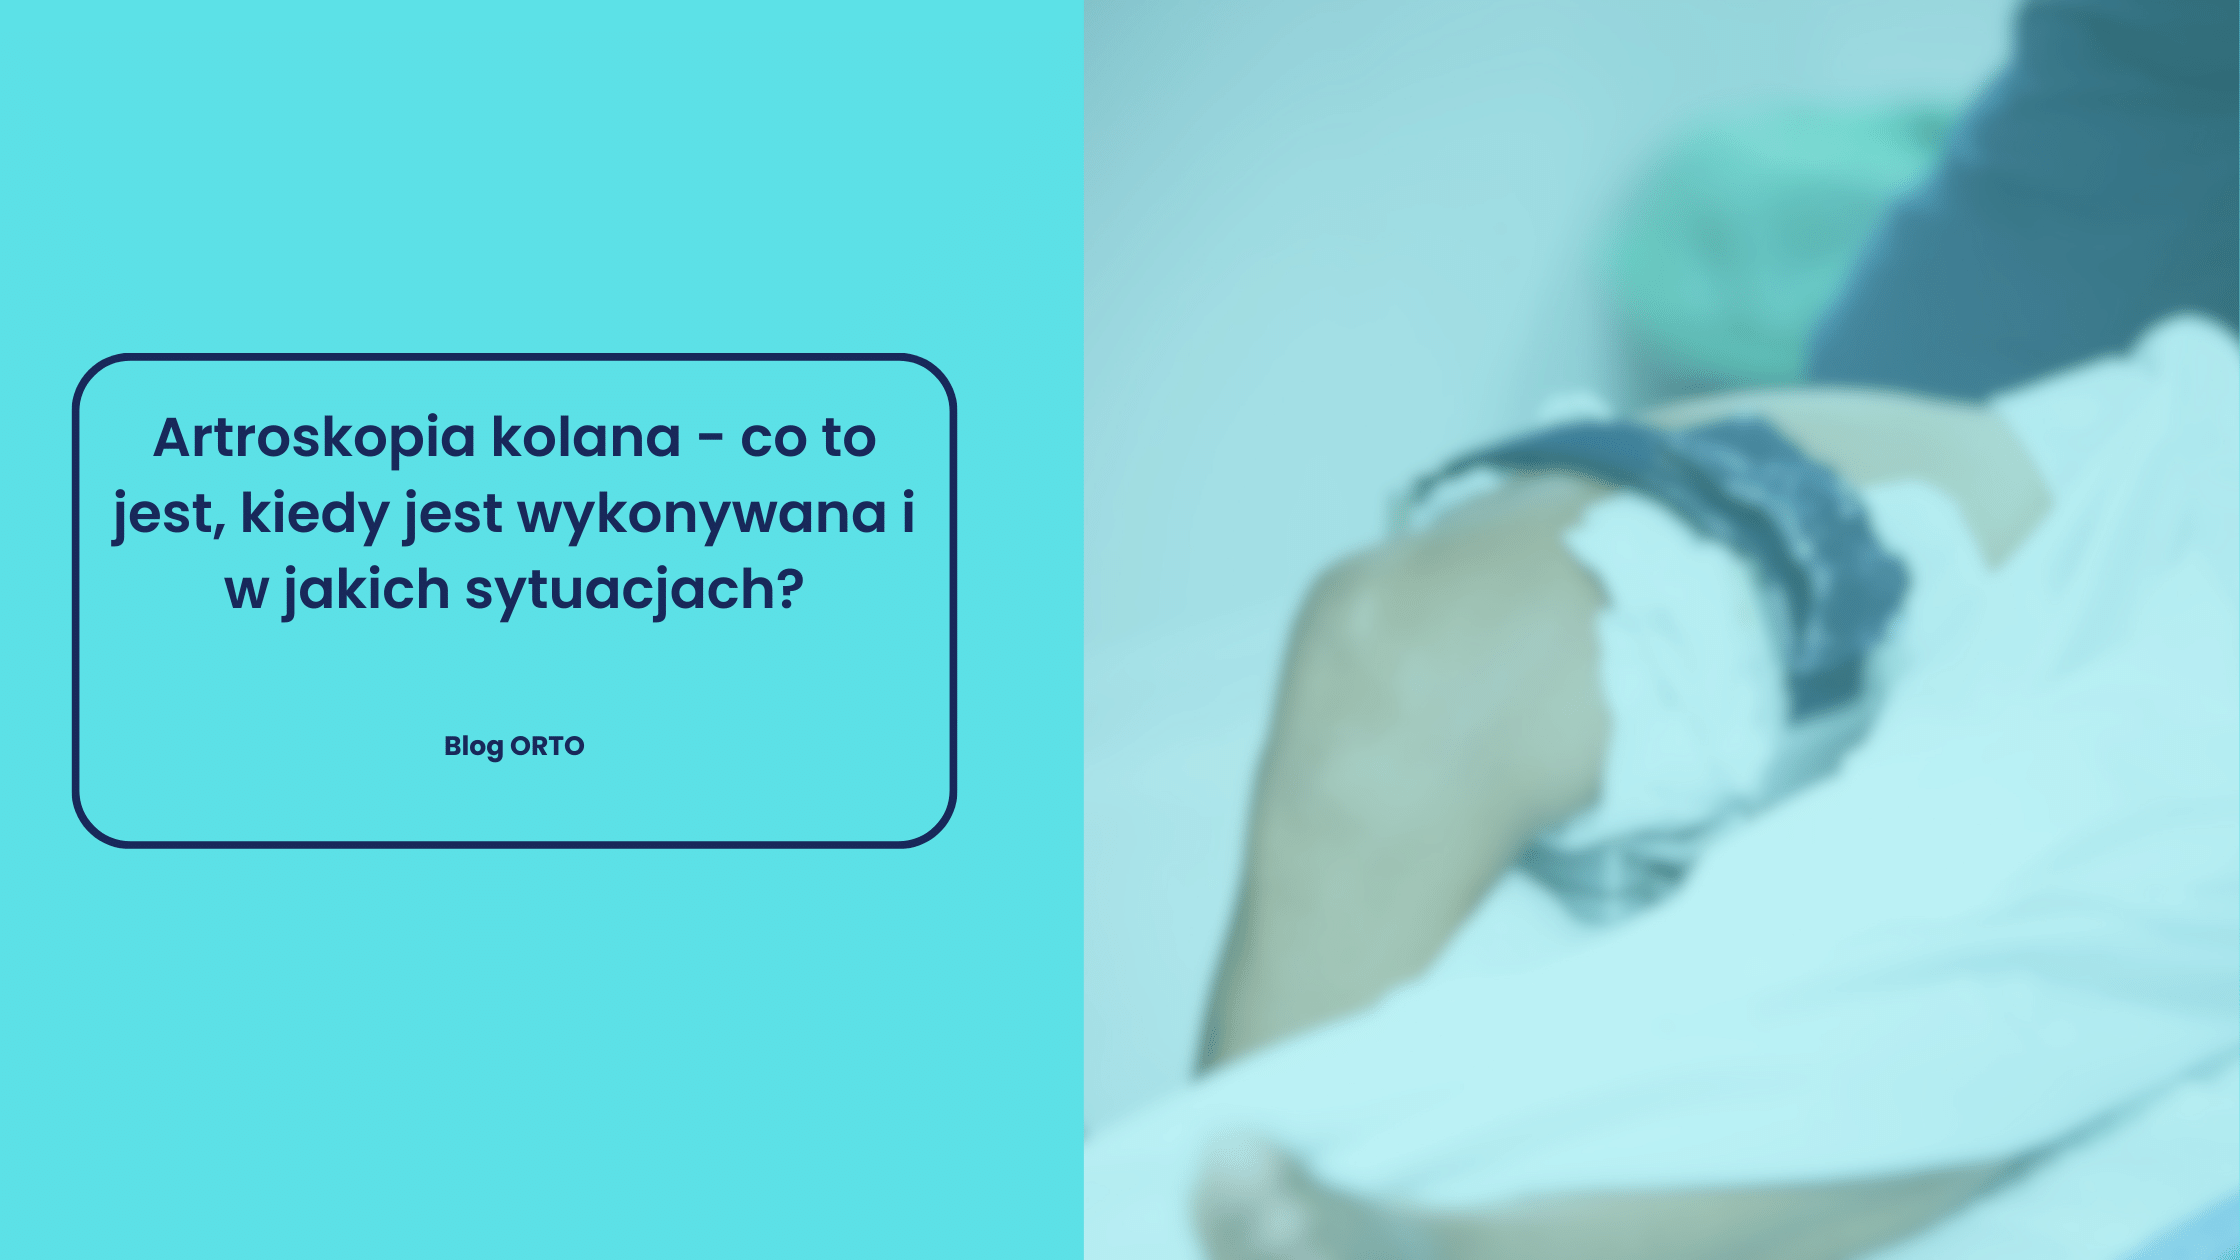 Artroskopia kolana - co to jest, kiedy jest wykonywana i w jakich sytuacjach? - blog orto.pl